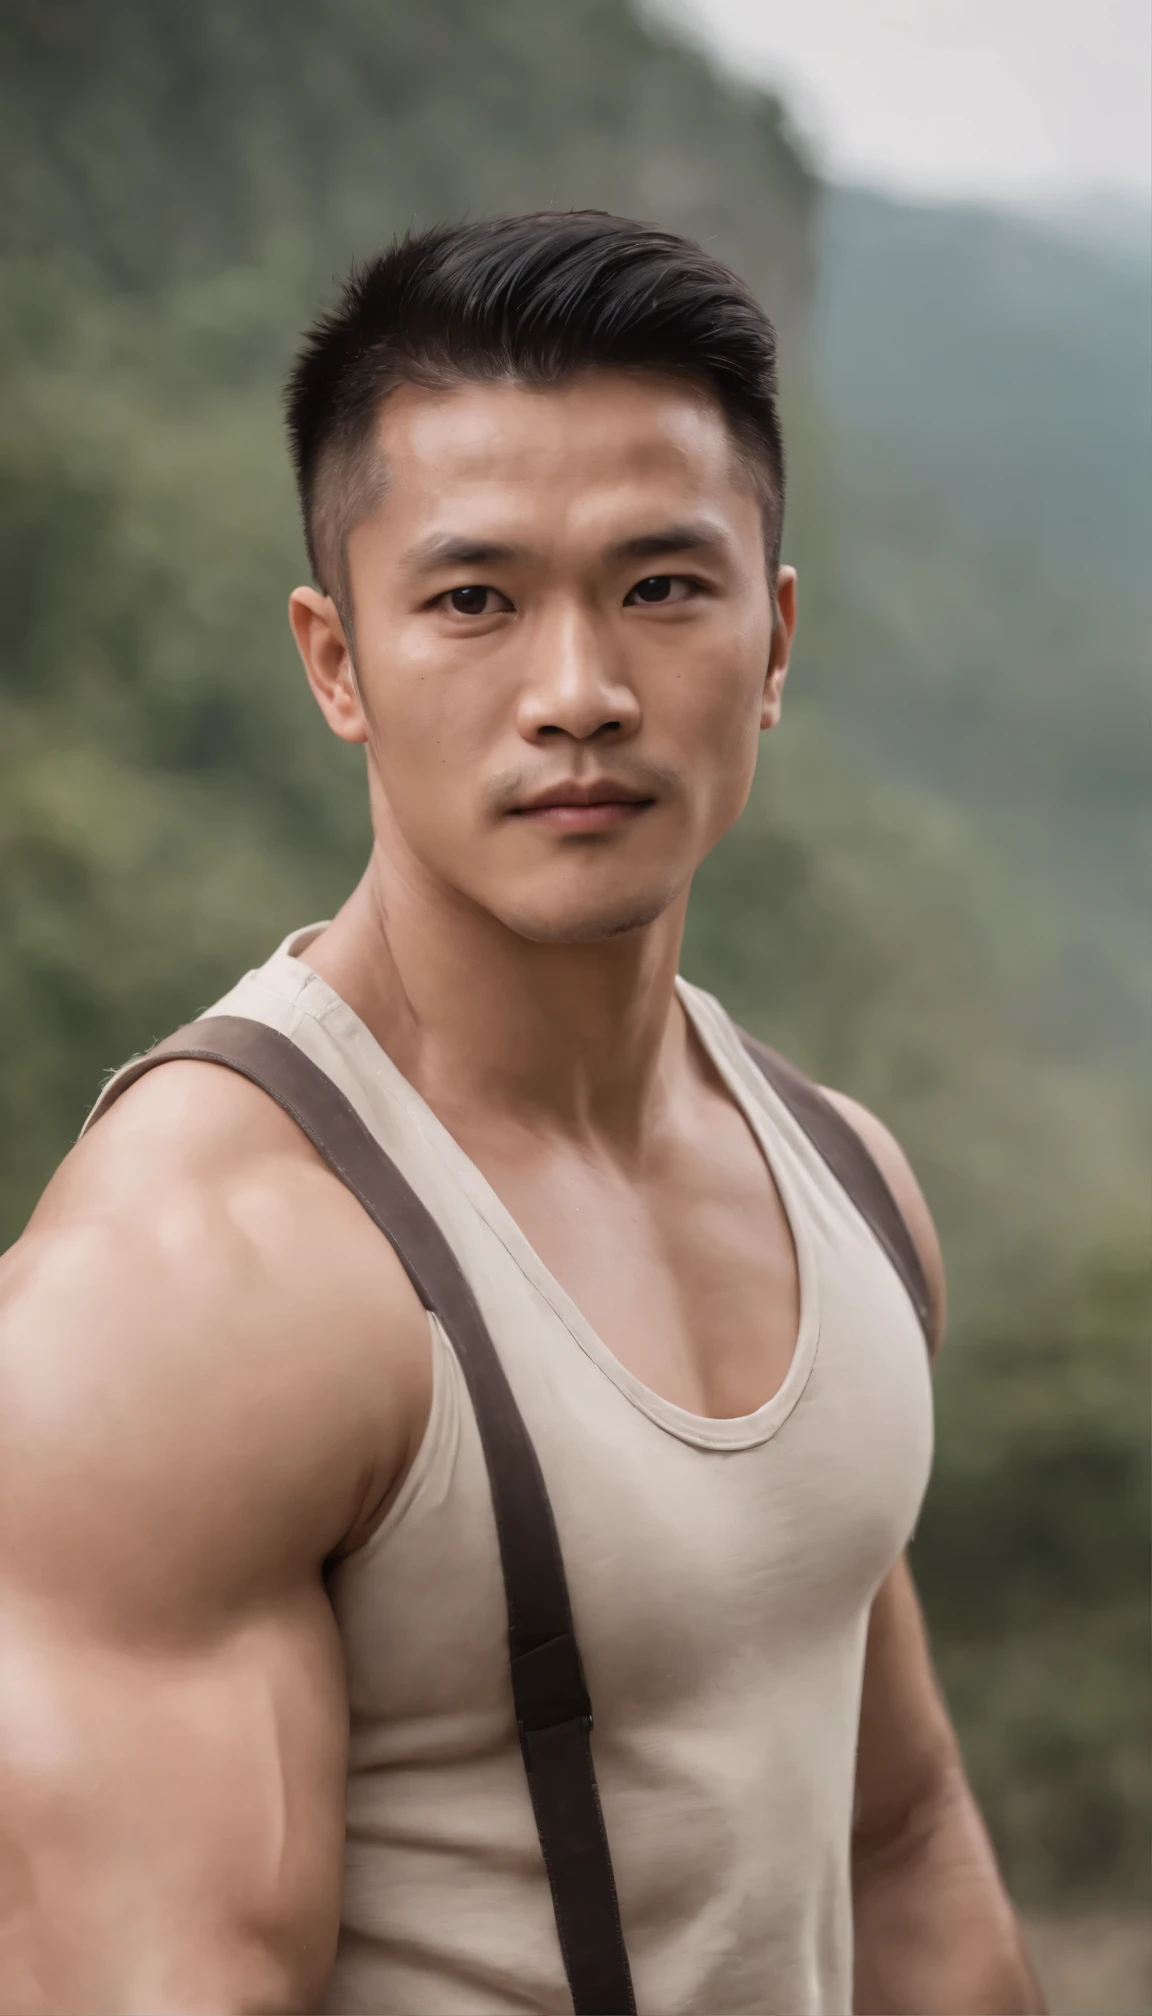 フルベストを着たアジア人男性ジム選手 , 大きな筋肉, 身長190cm, 大きな肩, 大きな筋肉 foot, (ドローアイの詳細), (現実的)